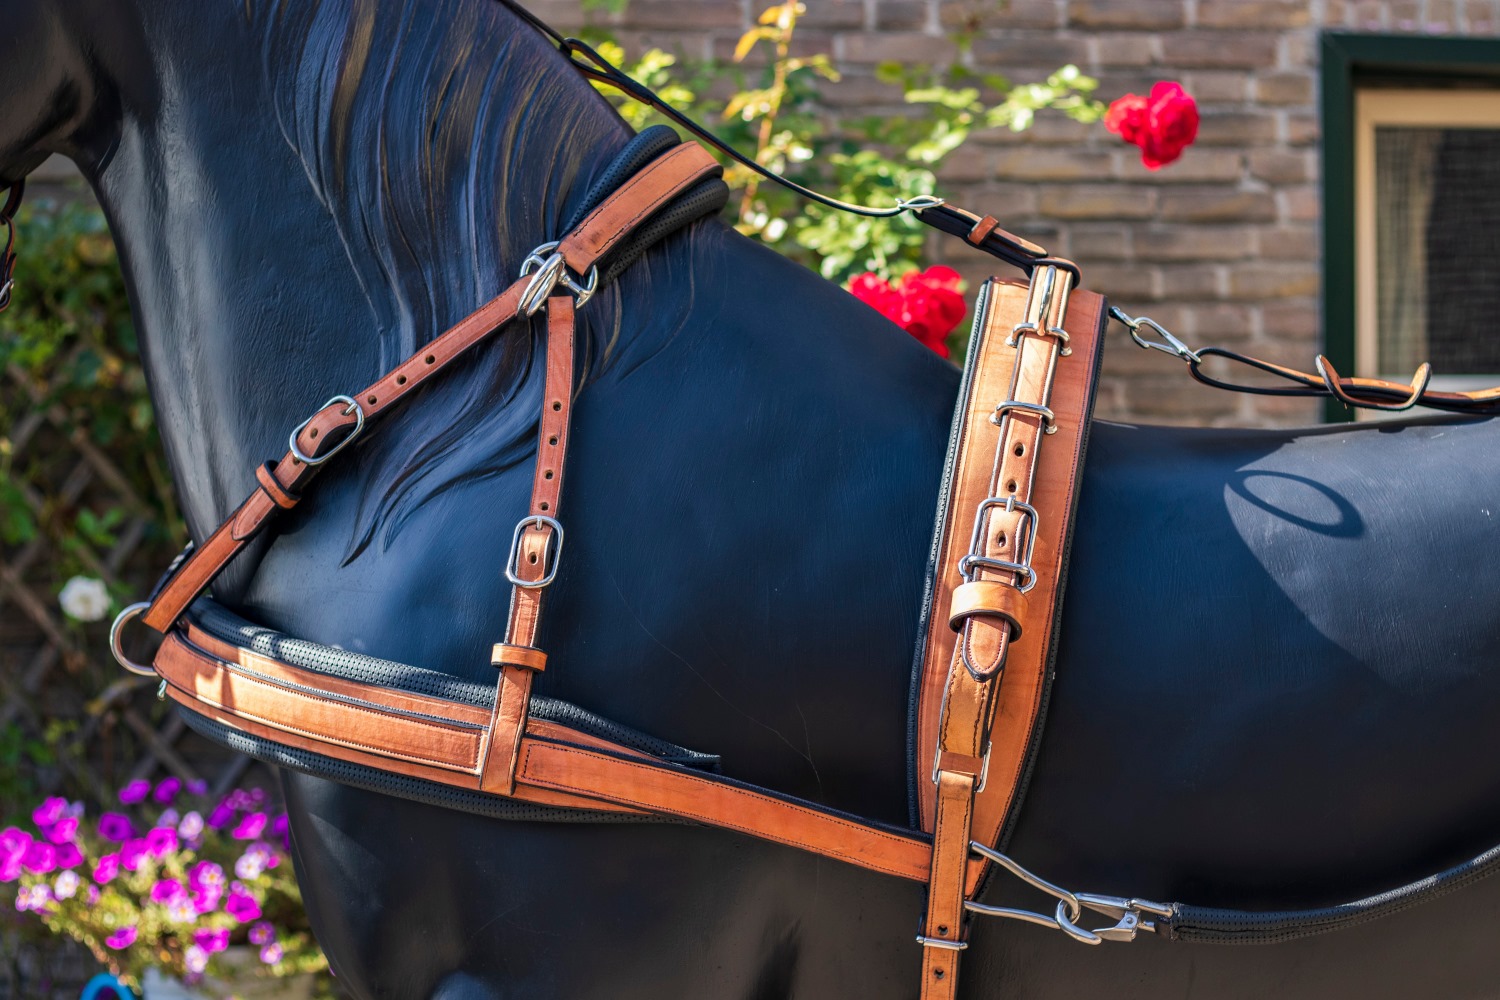 Van der Wiel introduces new training harness for hackney and Dutch harness  horses - Hoefnet nieuws over in- en outdoor menwedstrijde